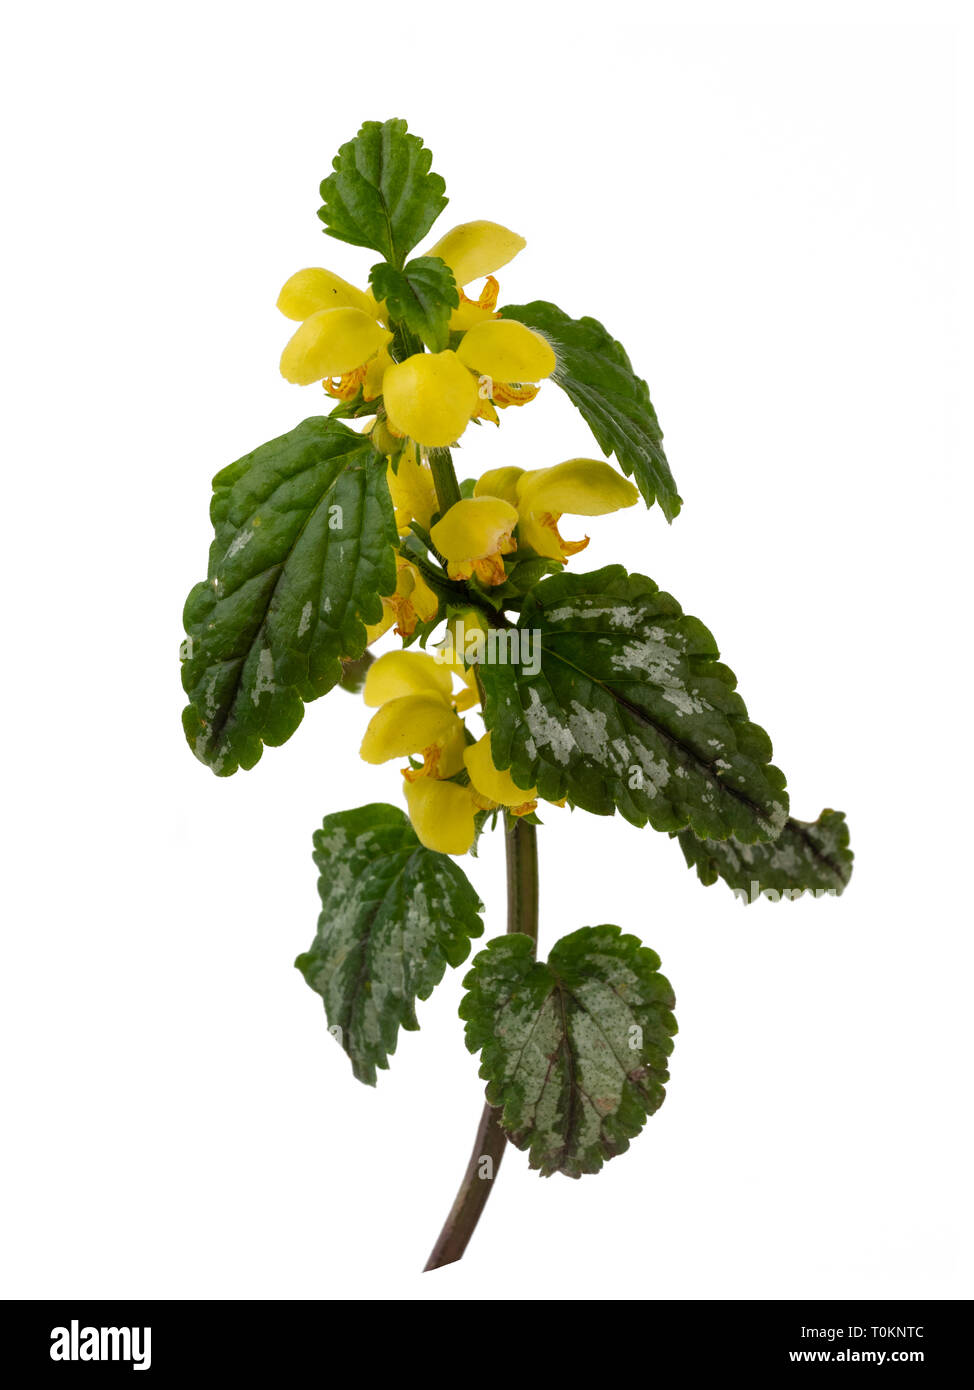 Il fogliame variegato e molla gialla fiori del giardino invasiva impianto, Lamiastrum galeobdolon subsp argentatum, isolato su sfondo bianco Foto Stock